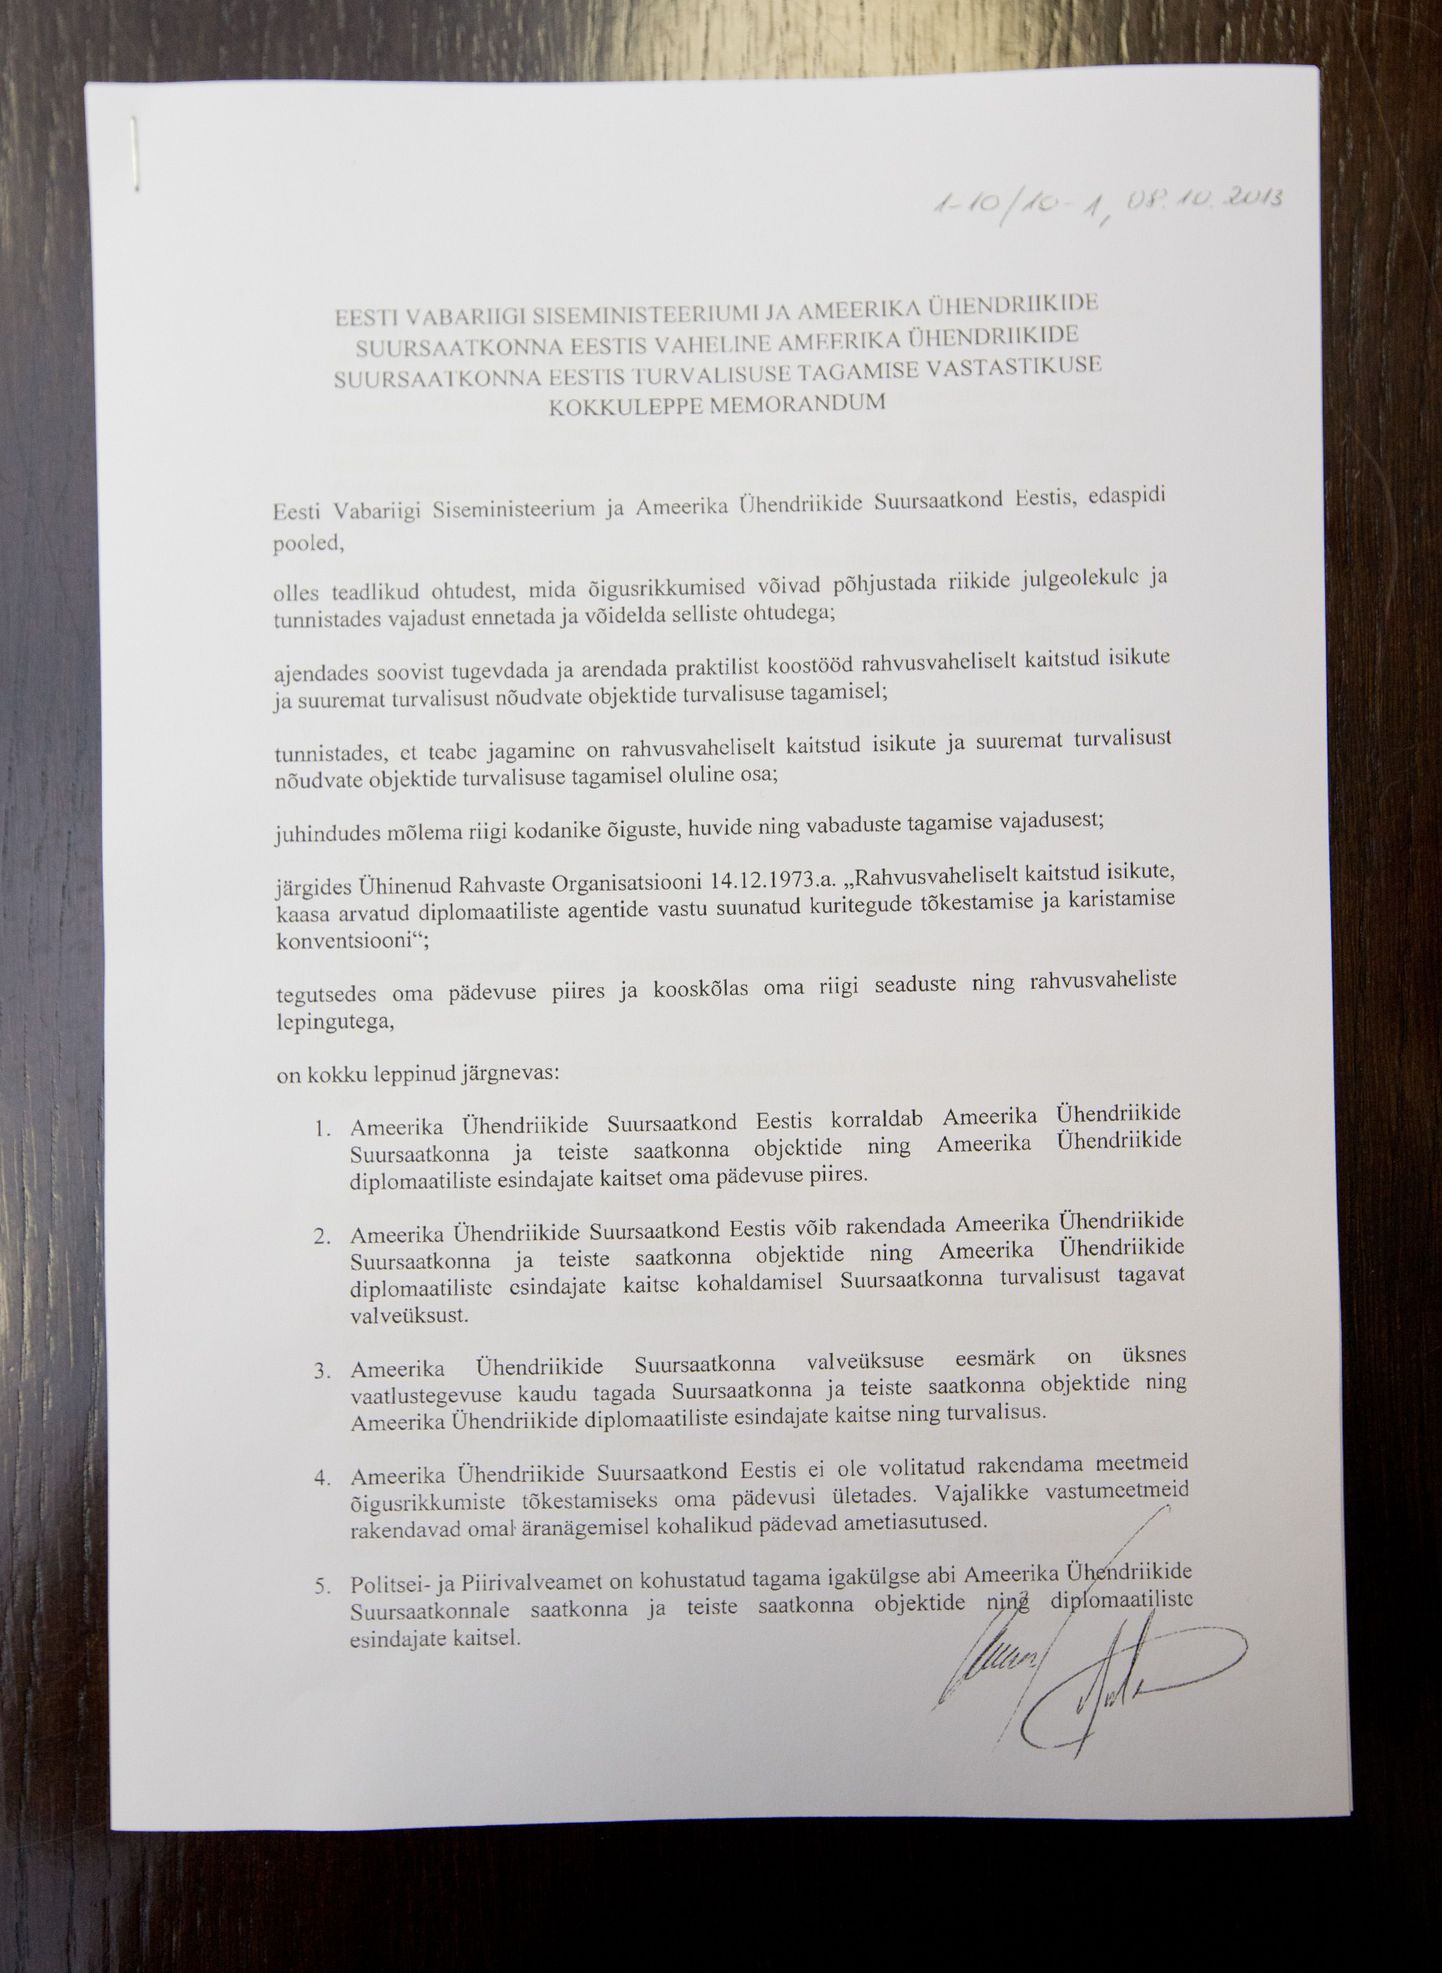 Меморандум о сотрудничестве по обеспечению мер безопасности посольства США, заключенный между МВД Эстонии и посольством.